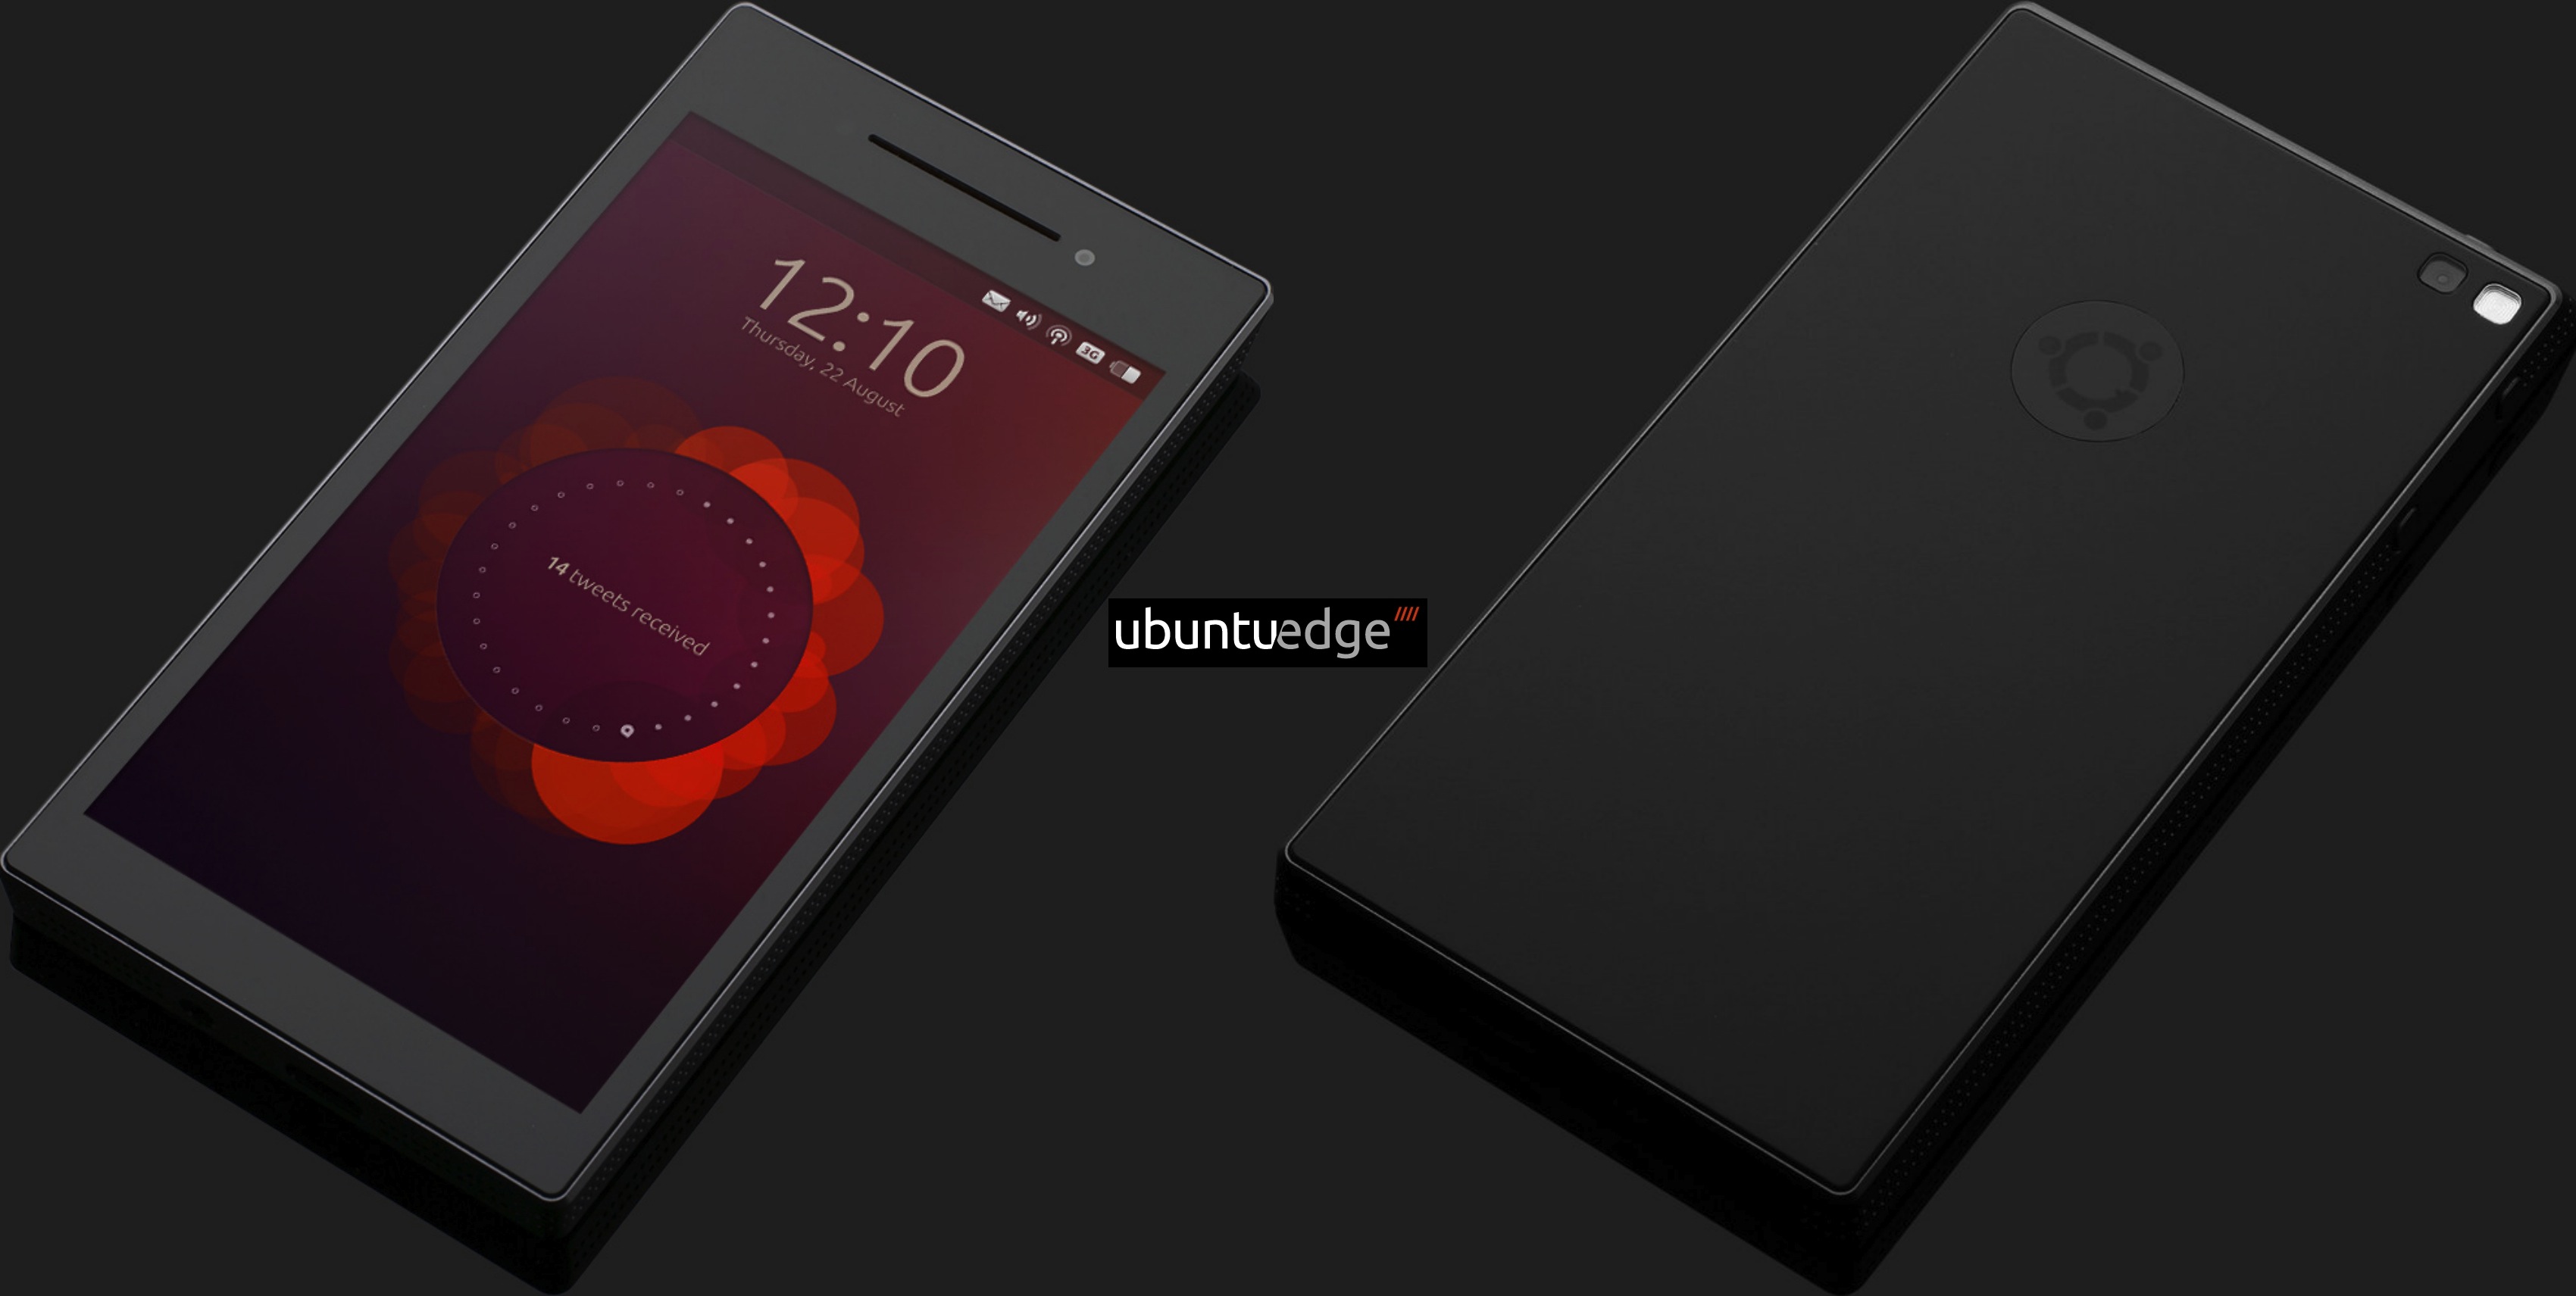 ubuntu smartphone concept